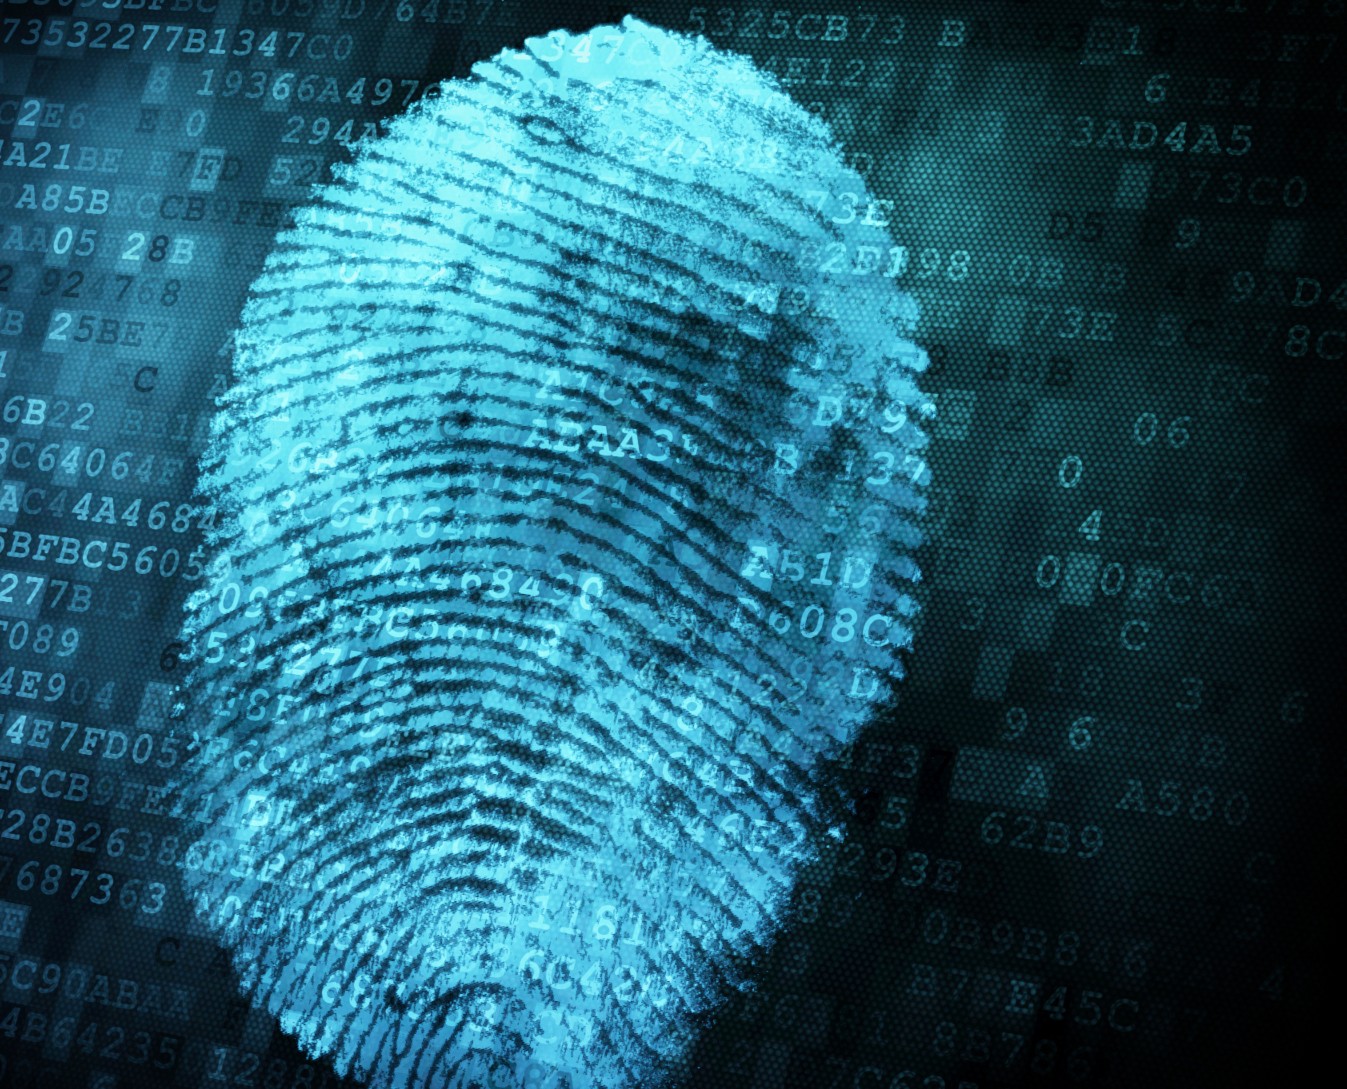 Tor Sapienza, incastrato dalle impronti digitali dopo aver rapinato un ufficio postale